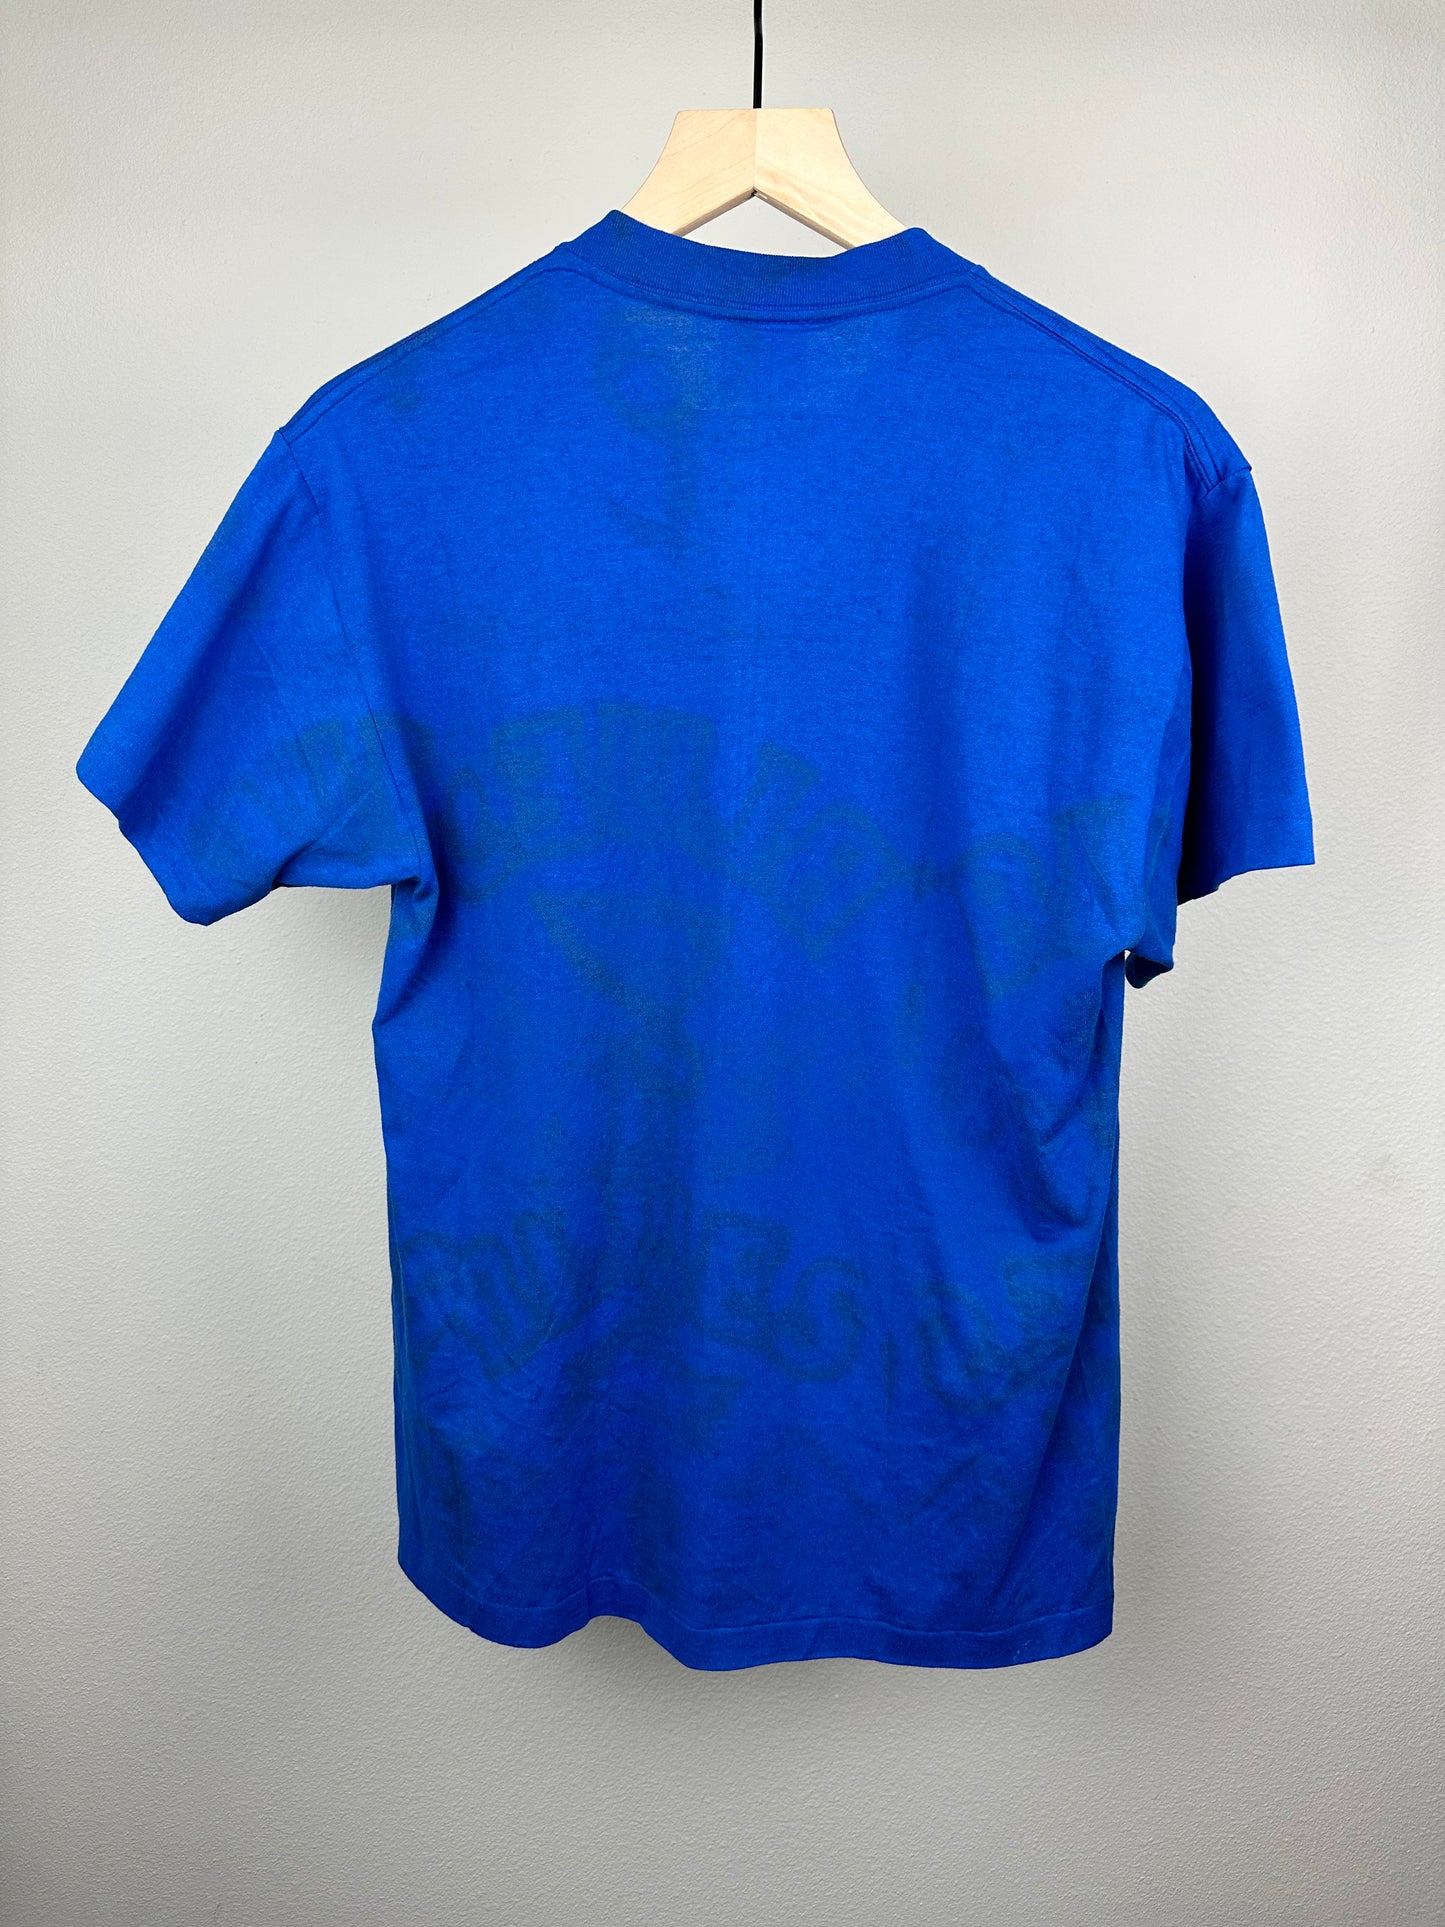 St Louis Blues T-Shirt